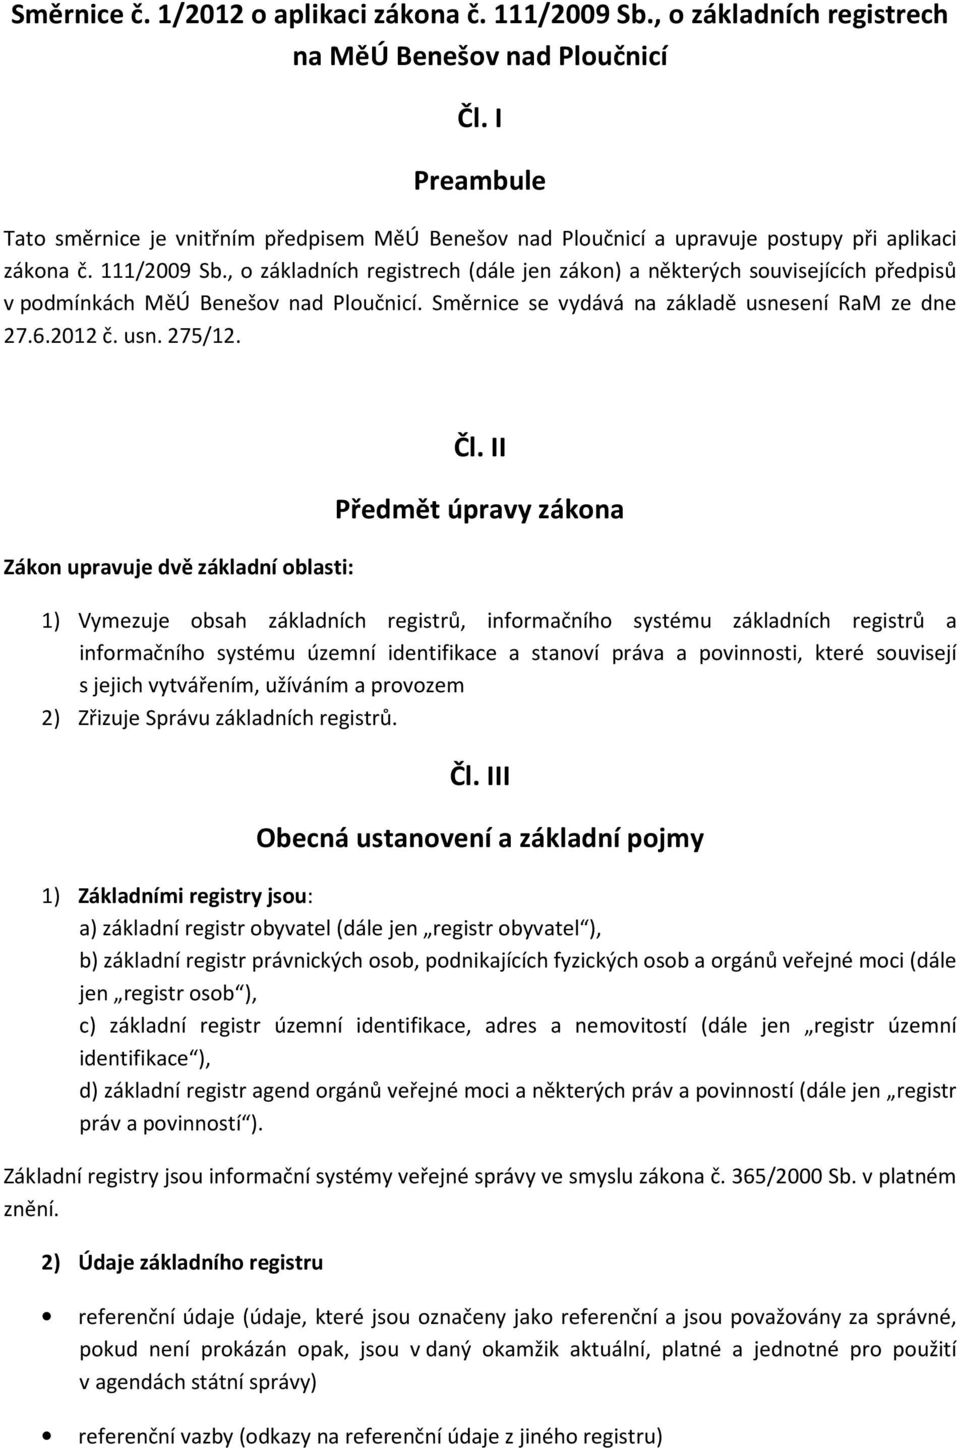 , o základních registrech (dále jen zákon) a některých souvisejících předpisů v podmínkách MěÚ Benešov nad Ploučnicí. Směrnice se vydává na základě usnesení RaM ze dne 27.6.2012 č. usn. 275/12.